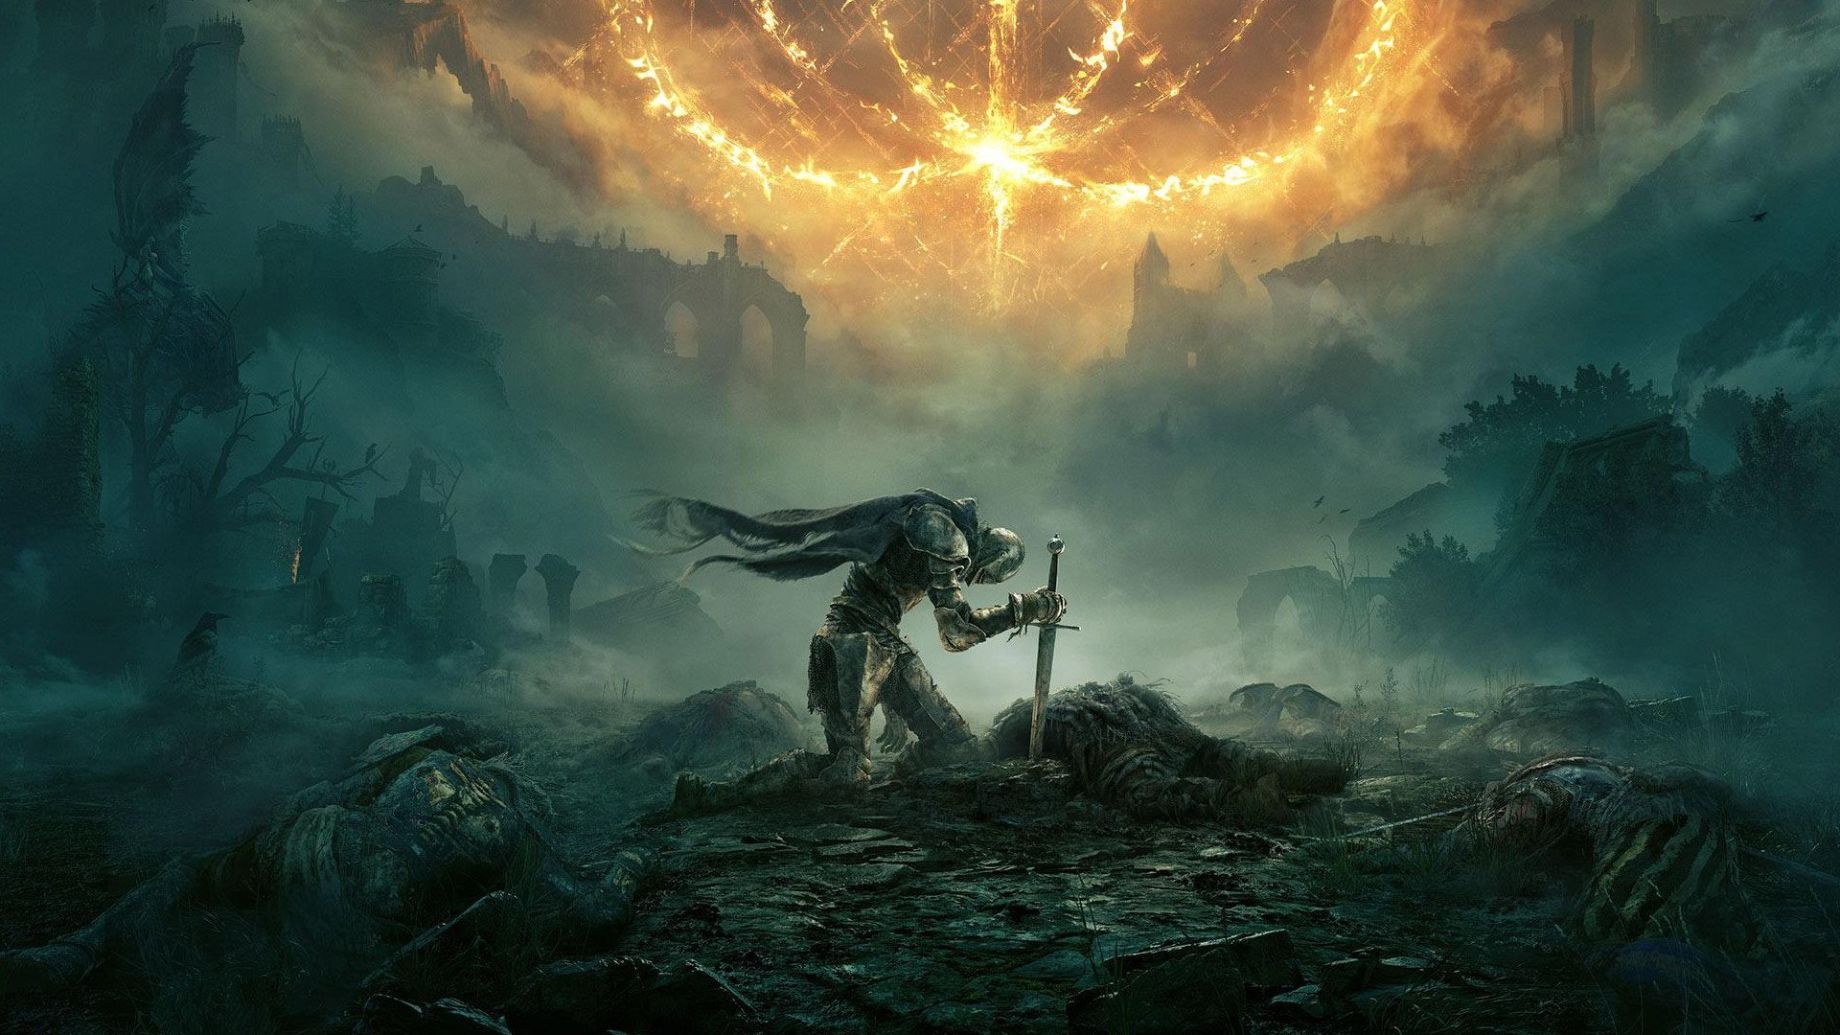 Game Awards 2022 winners: Where to buy Elden Ring, God of War Ragnarok